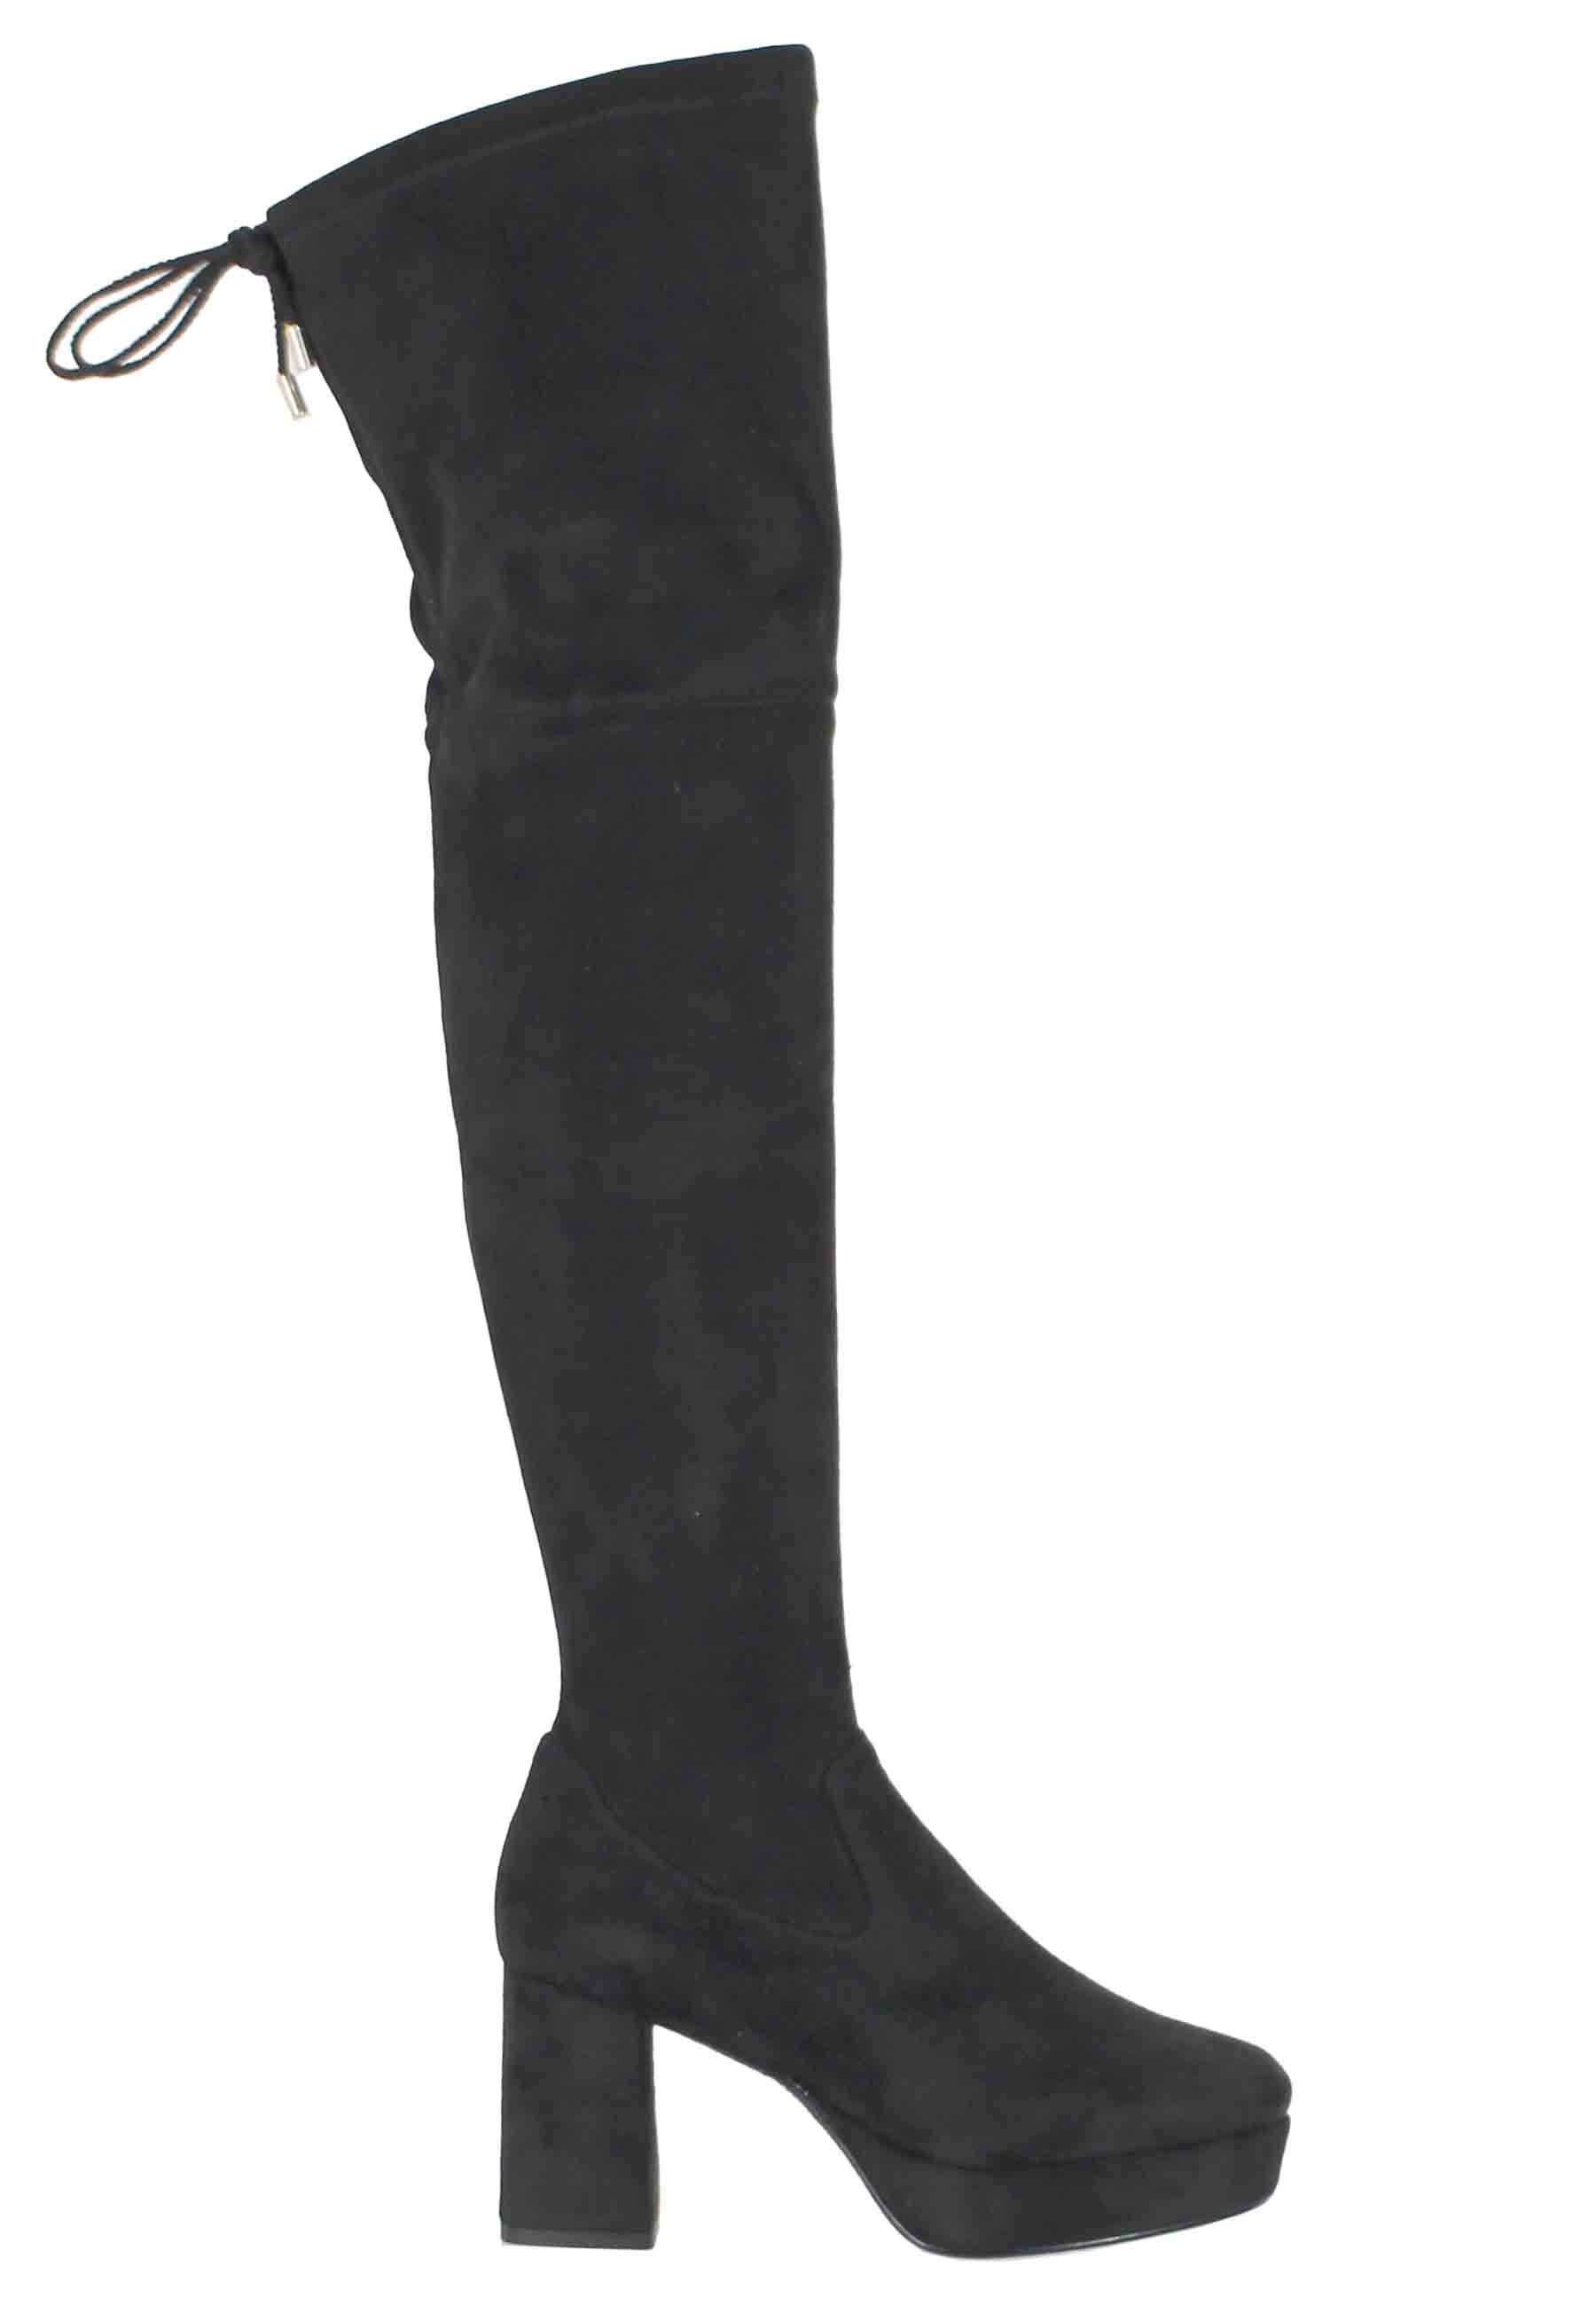 Stivali donna in camoscio nero con gambale alto